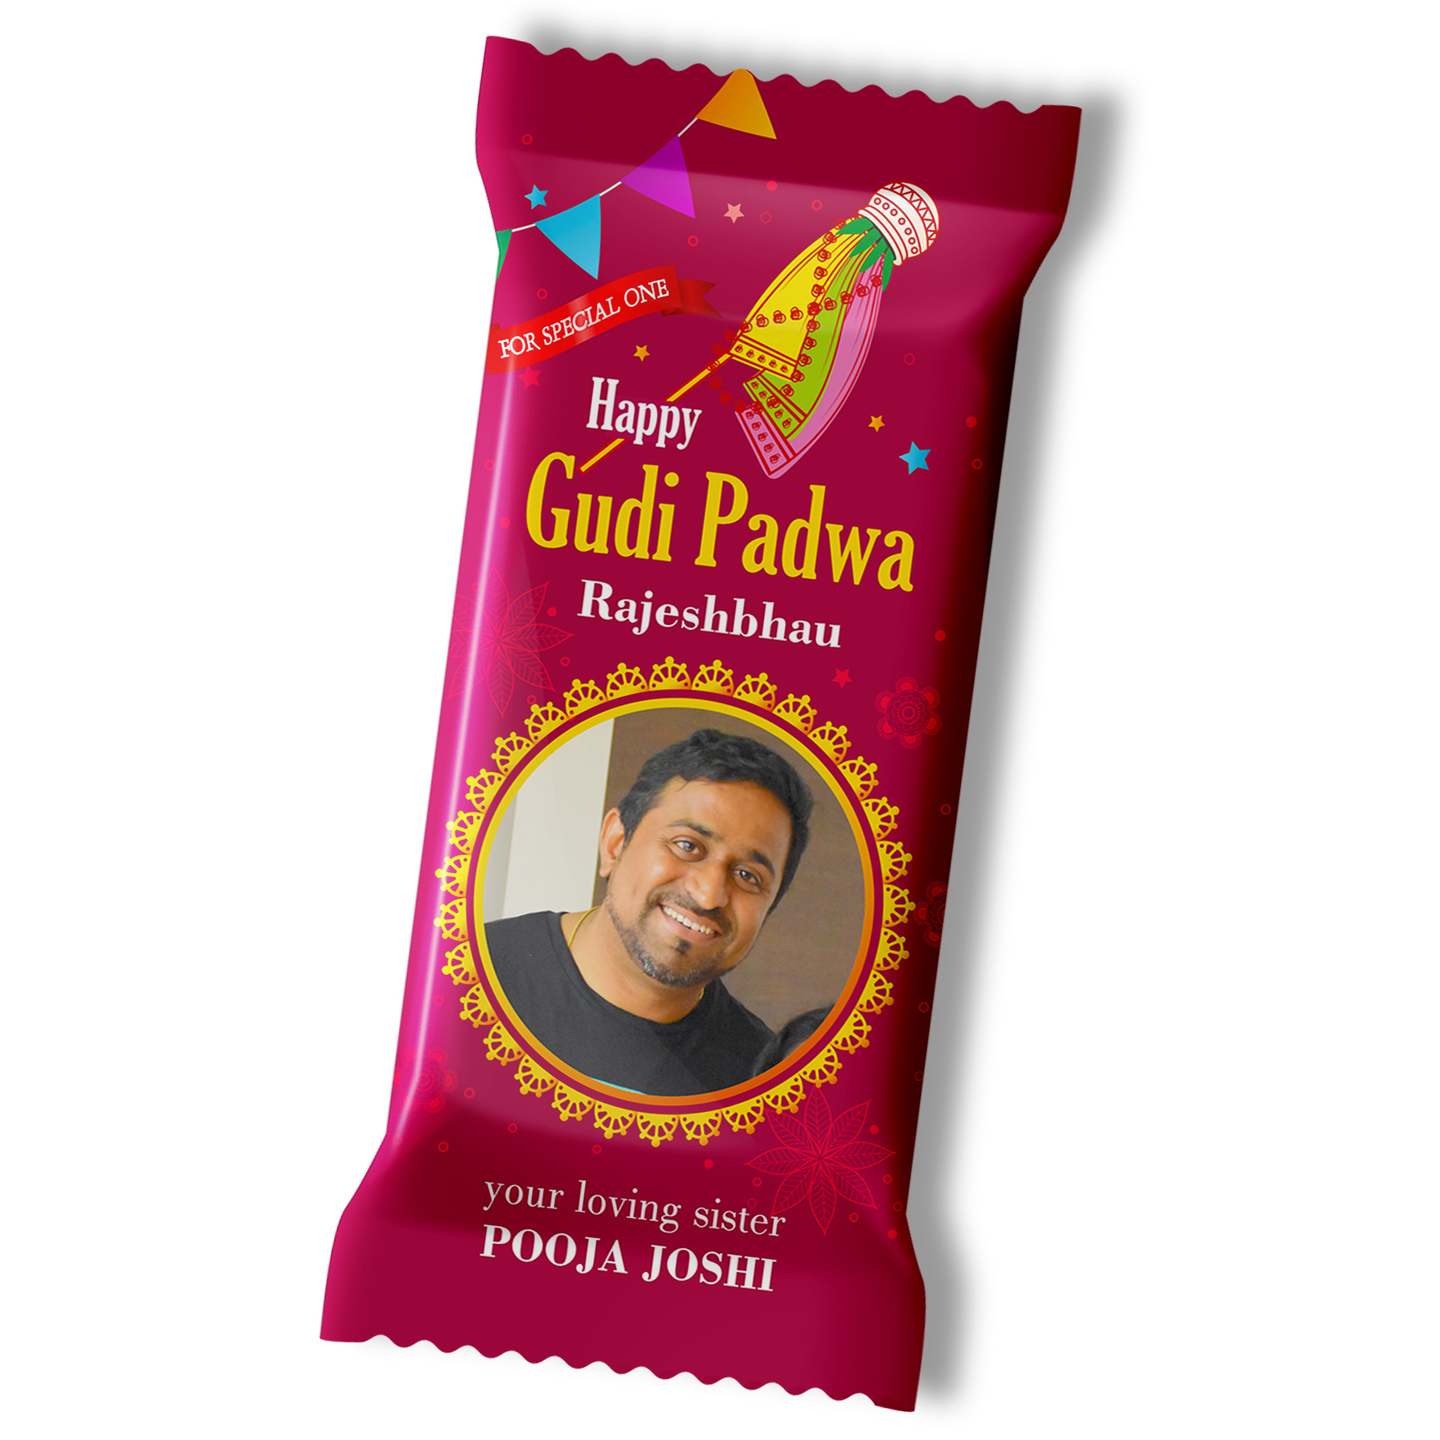 Gudi Padwa Gift, Personalized Chocolate Large bar - 100g